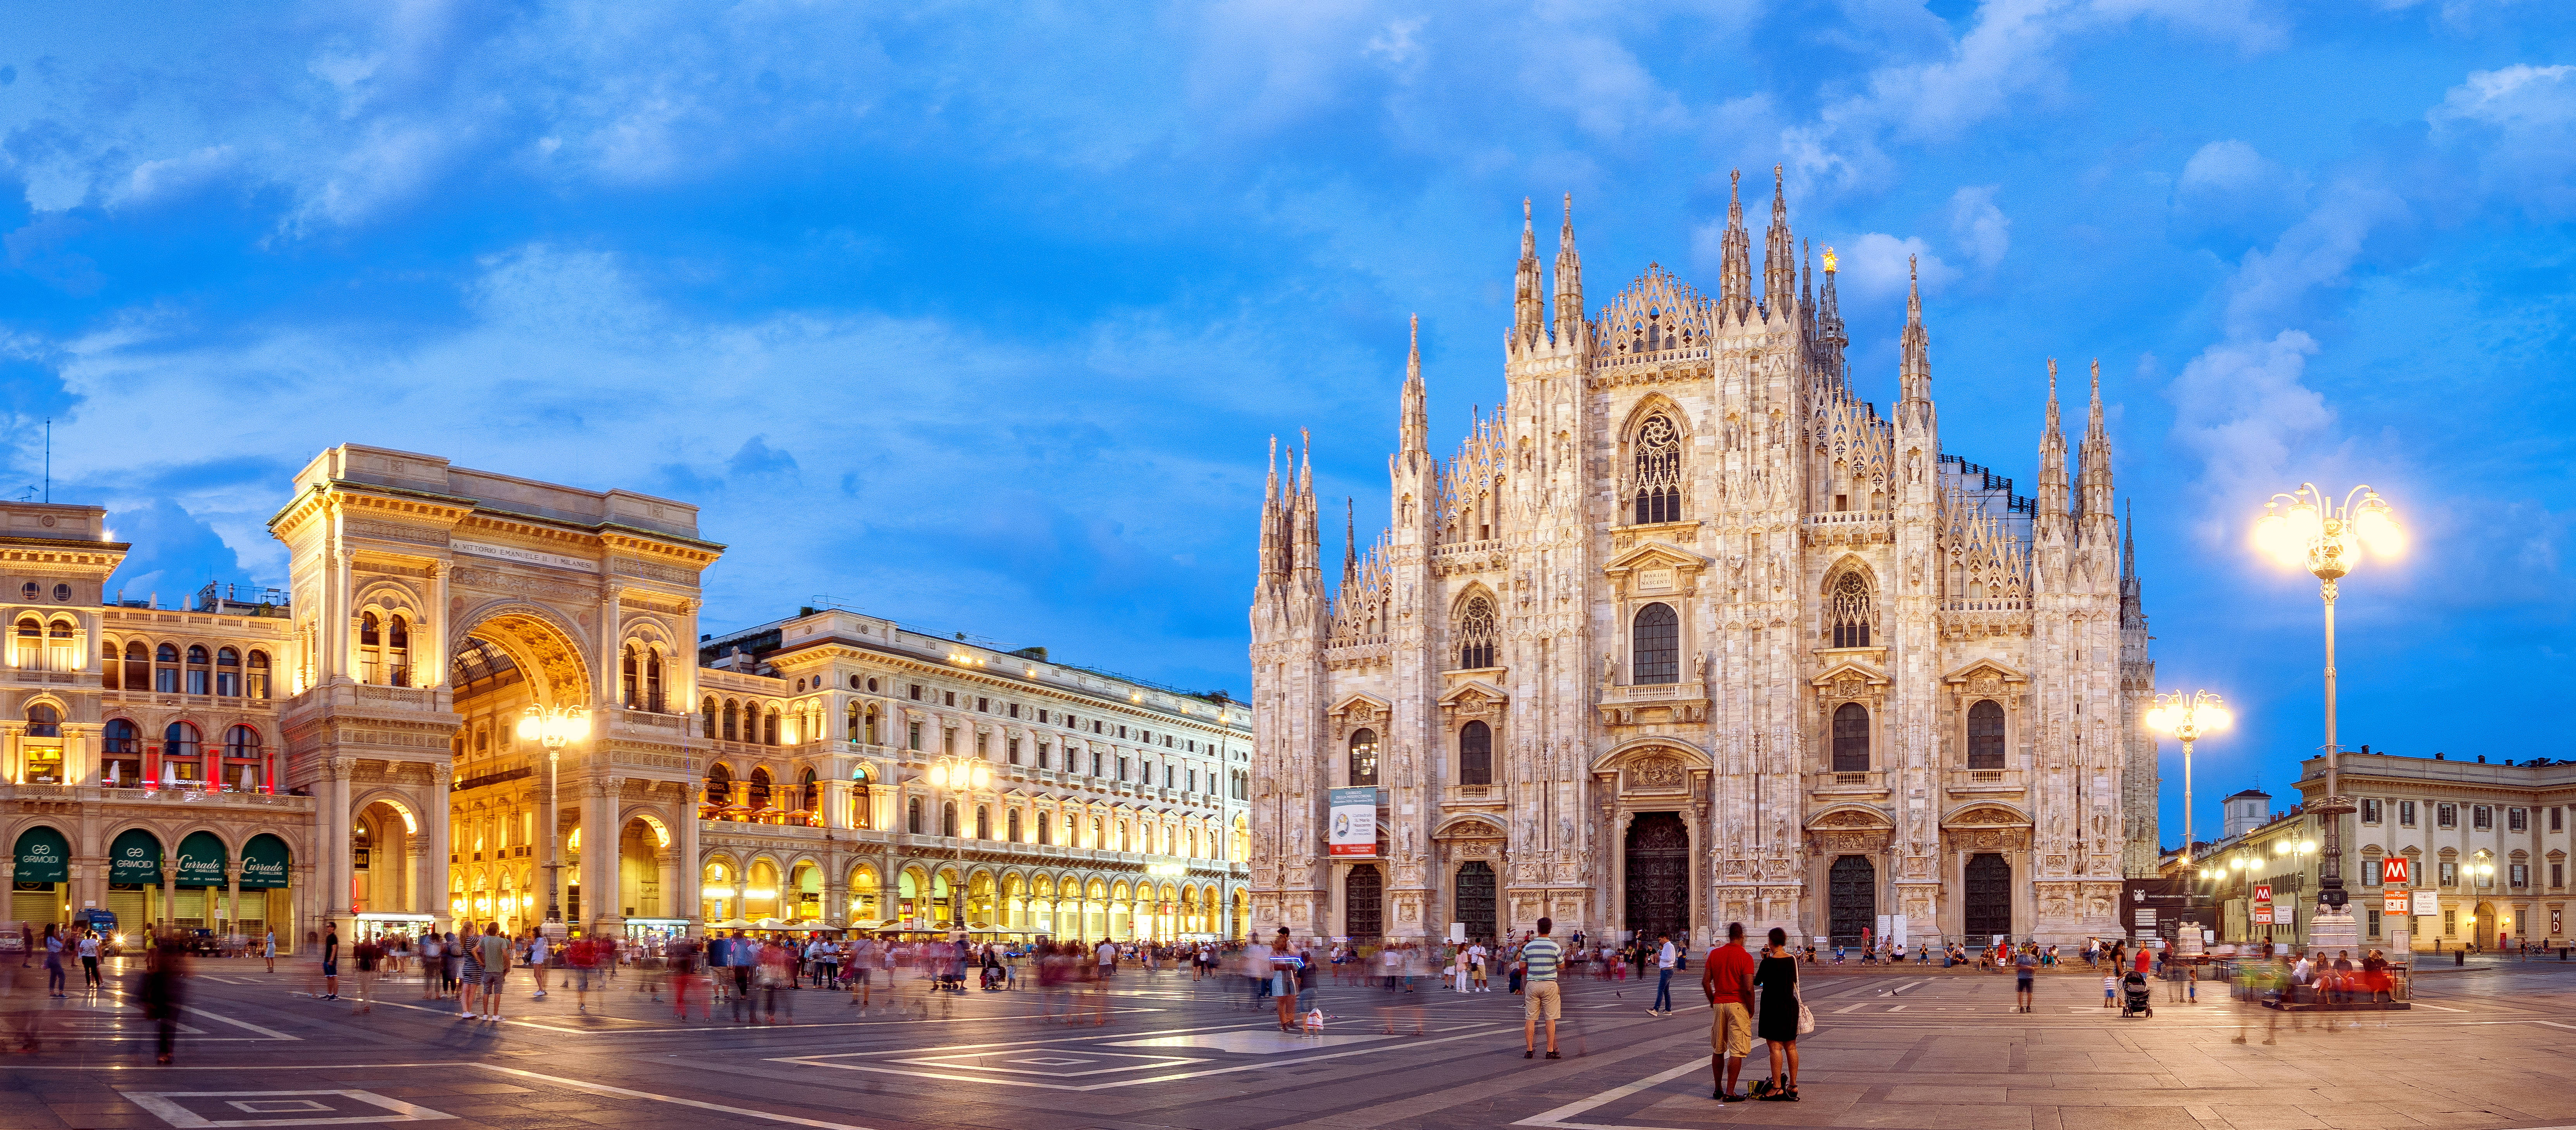 Piazza del Duomo mit Dom und Galleria Vittorio Emanuele